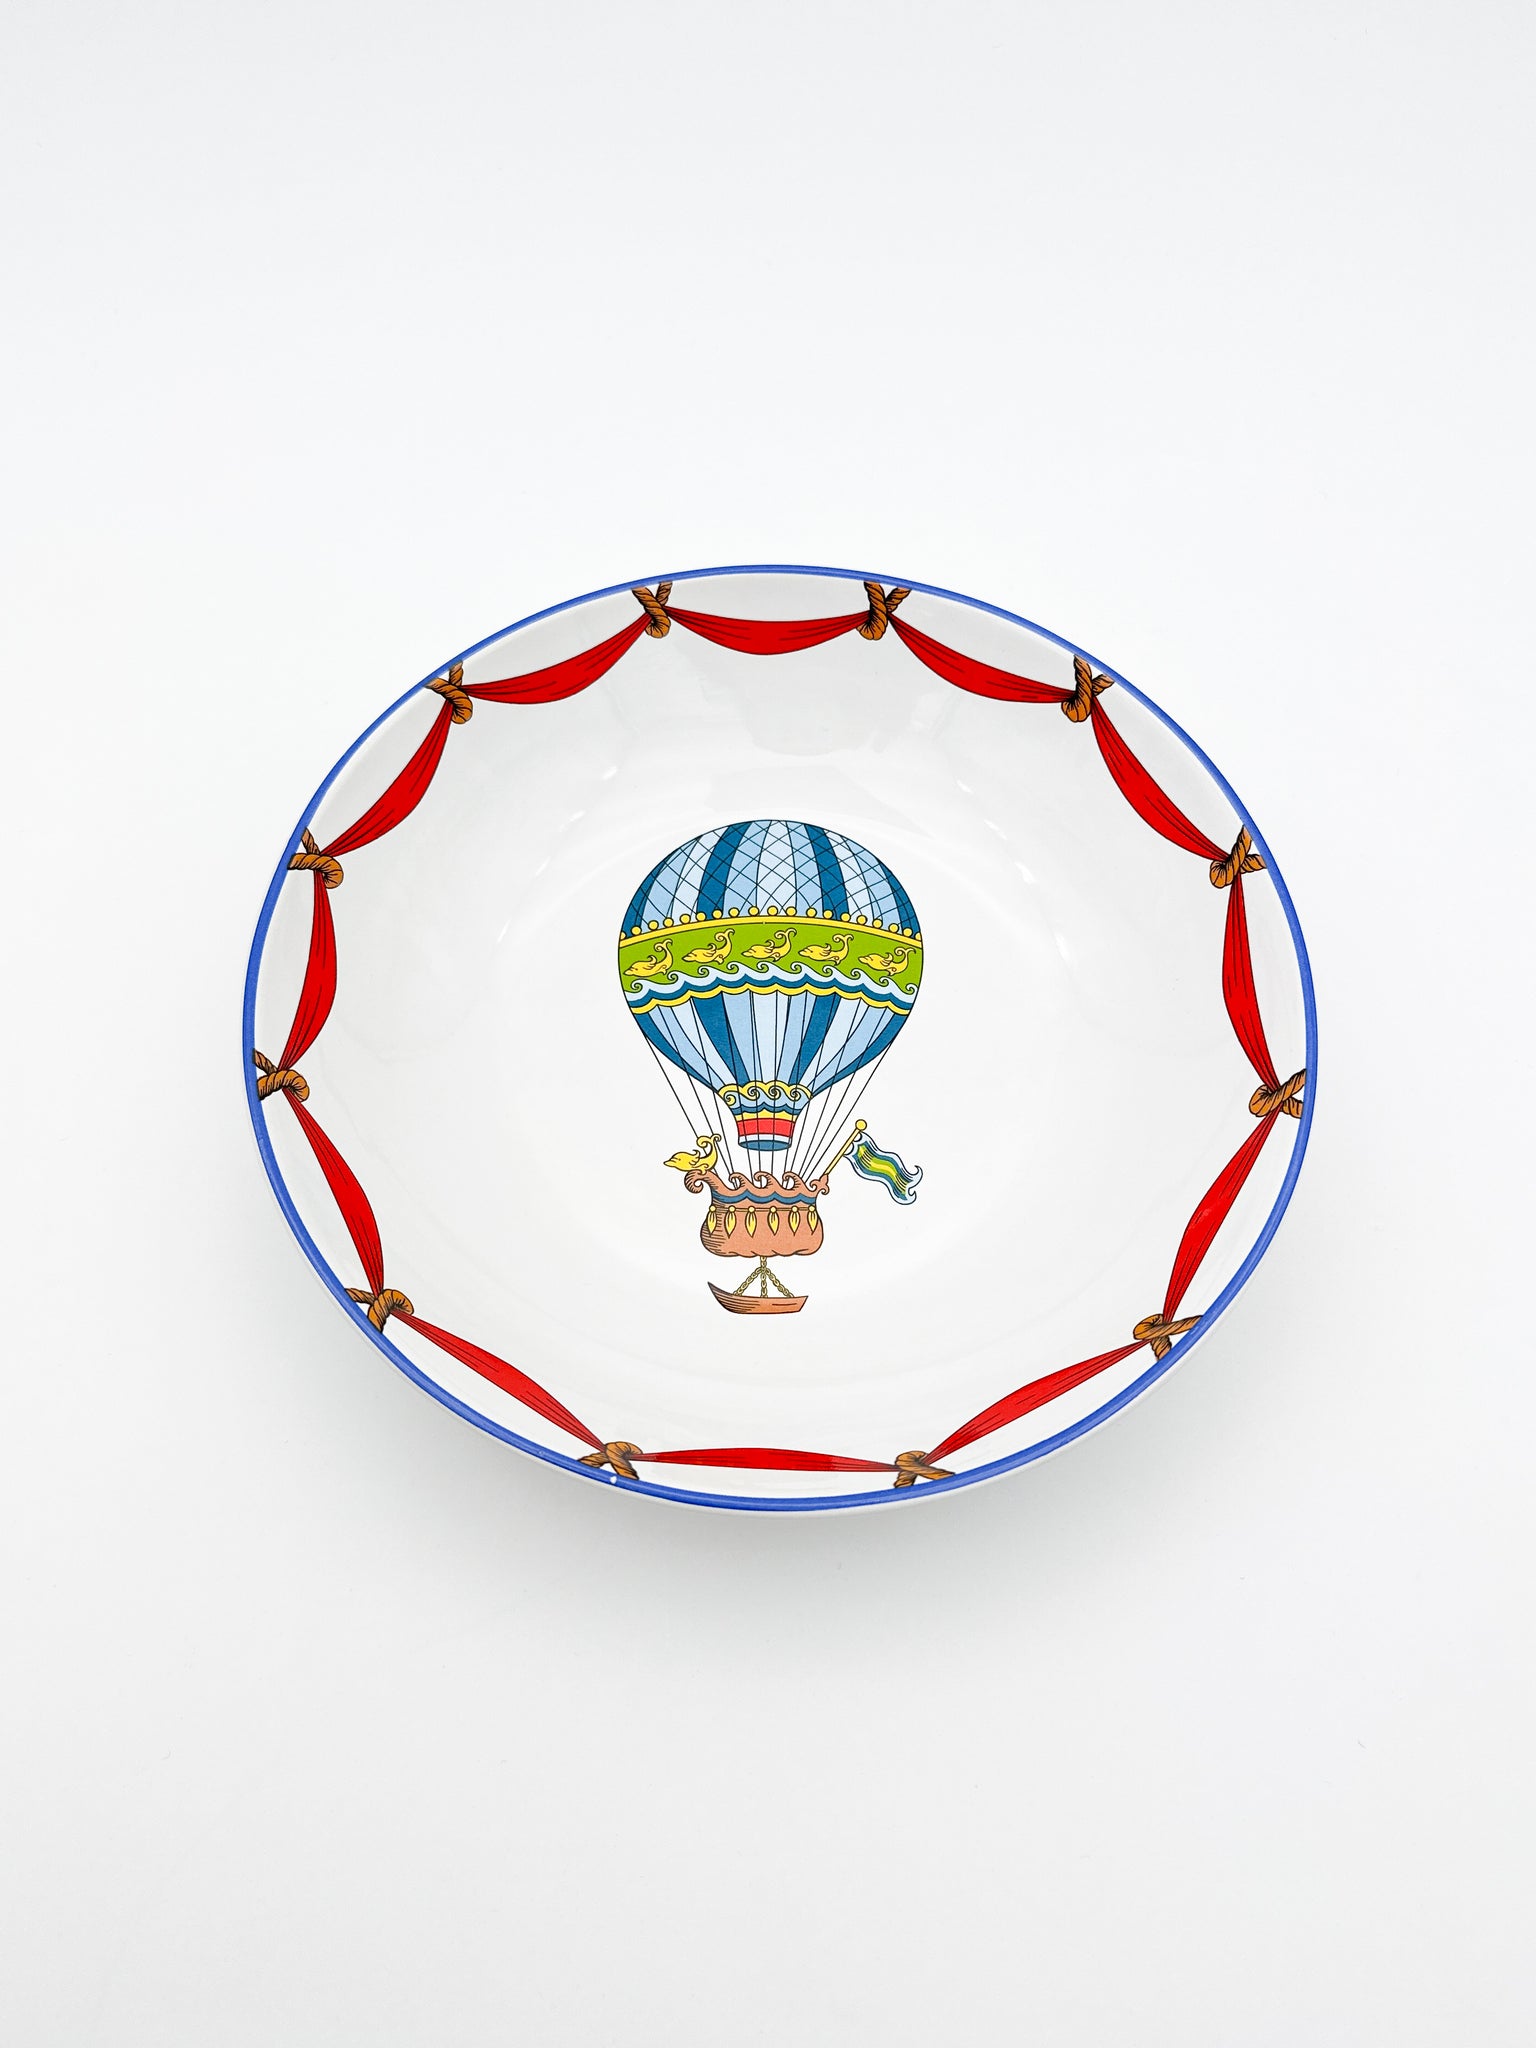 Tiffany Hot Air Balloon Plate, Fish & Waves